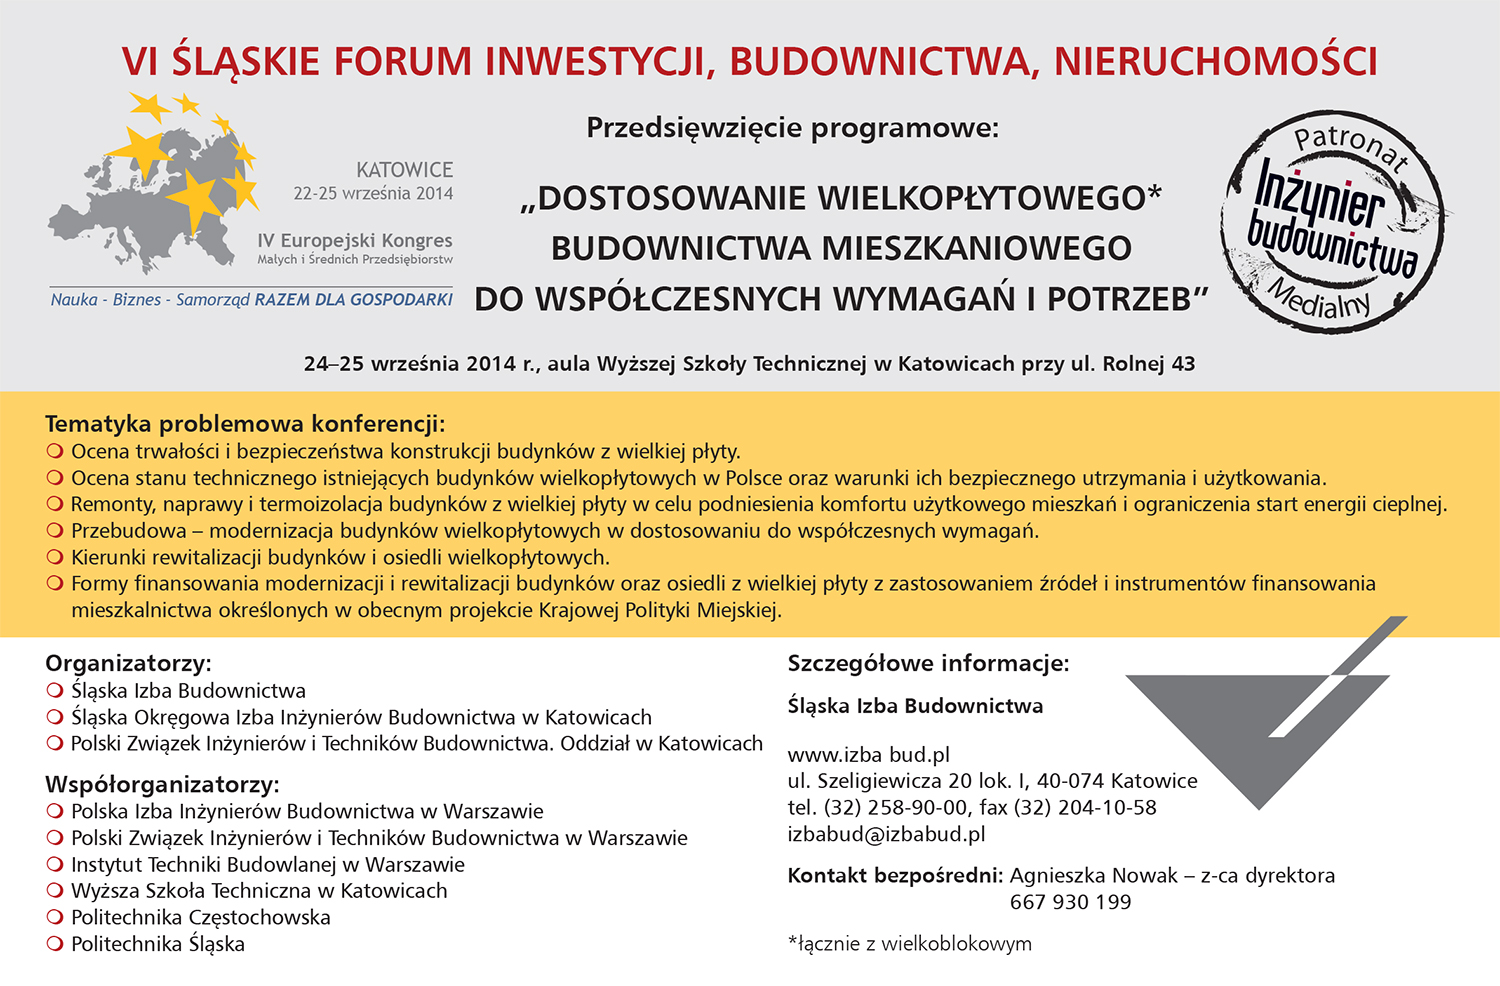 VI. Śląskie Forum Inwestycji, Budownictwa, Nieruchomości